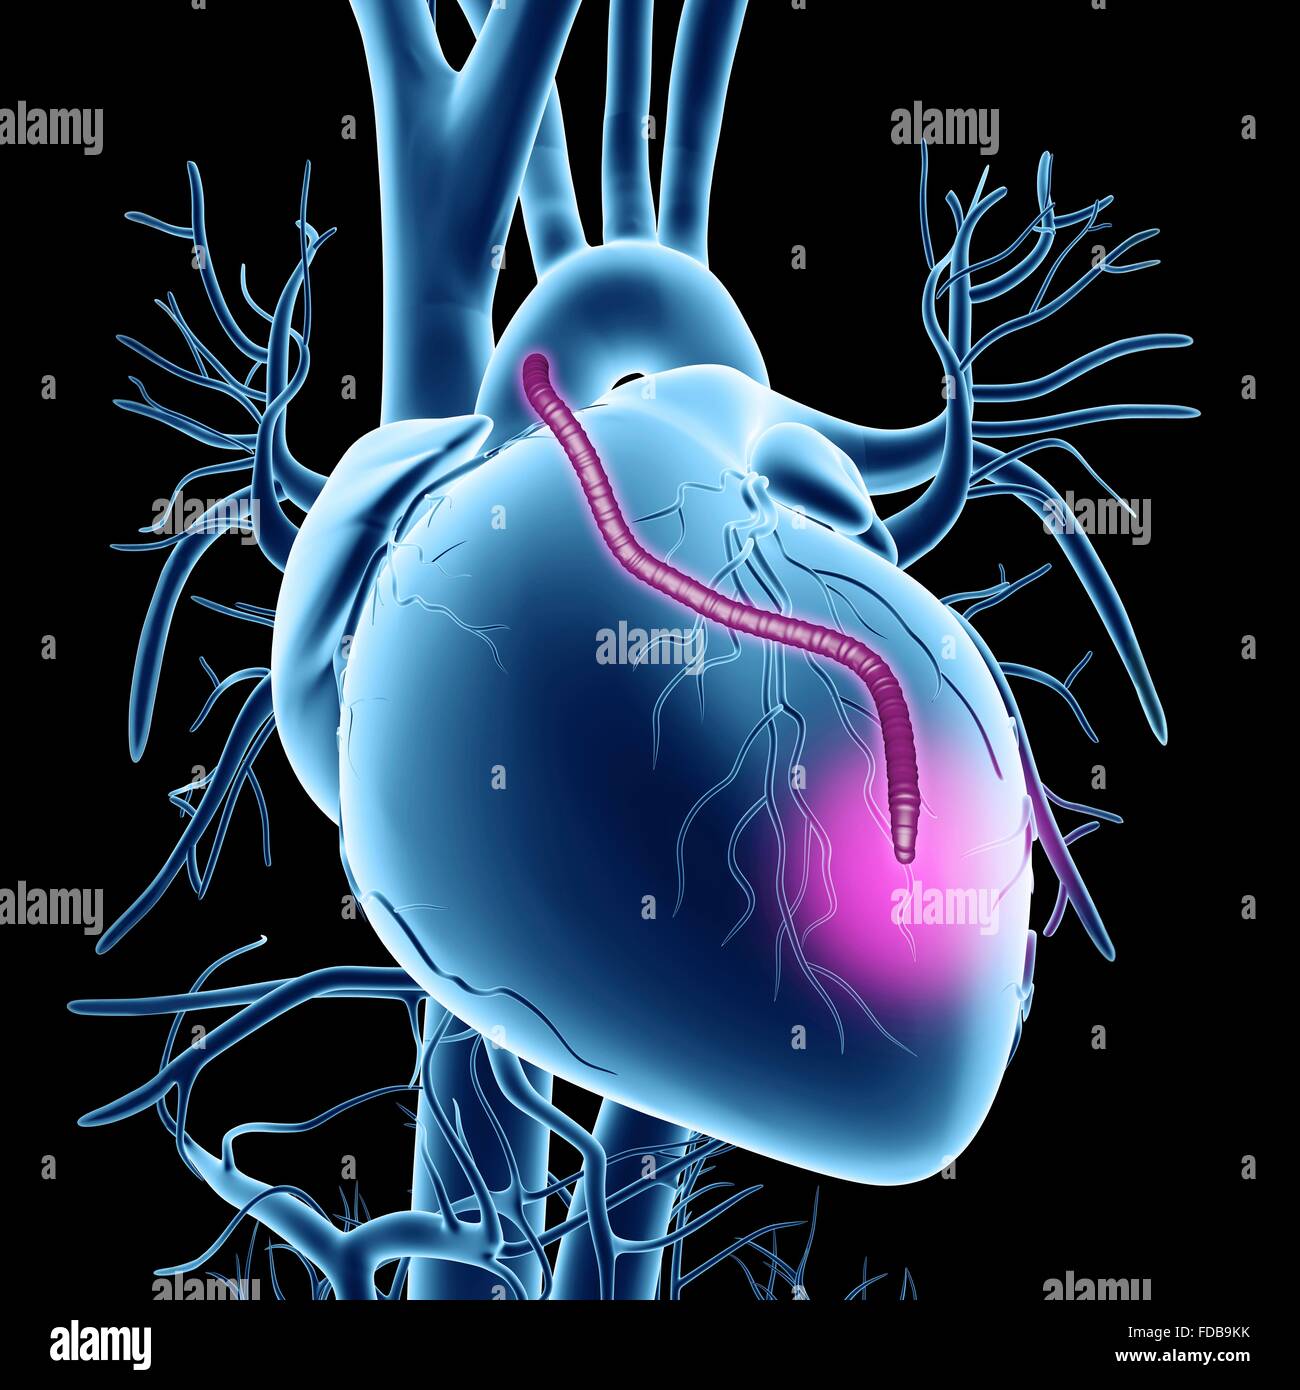 Cuore di innesto di bypass. Computer grafica di un cuore che ha avuto un blocco delle arterie coronarie trattati mediante innesto di bypass nell'arteria coronarica (CABG) chirurgia. Le arterie coronariche sono i piccoli vasi sanguigni visto correre oltre la superficie esterna del cuore. Essi forniscono sangue ossigenato per mantenere il muscolo cardiaco, di pompaggio e di un blocco può causare un attacco di cuore mortale. La soluzione è raccolto dalle arterie altrove nel corpo e li utilizzano per bypassare il blocco. Un innesto è visto correre dall'aorta, il corpo principale arteria, torna a le arterie coronarie. Foto Stock